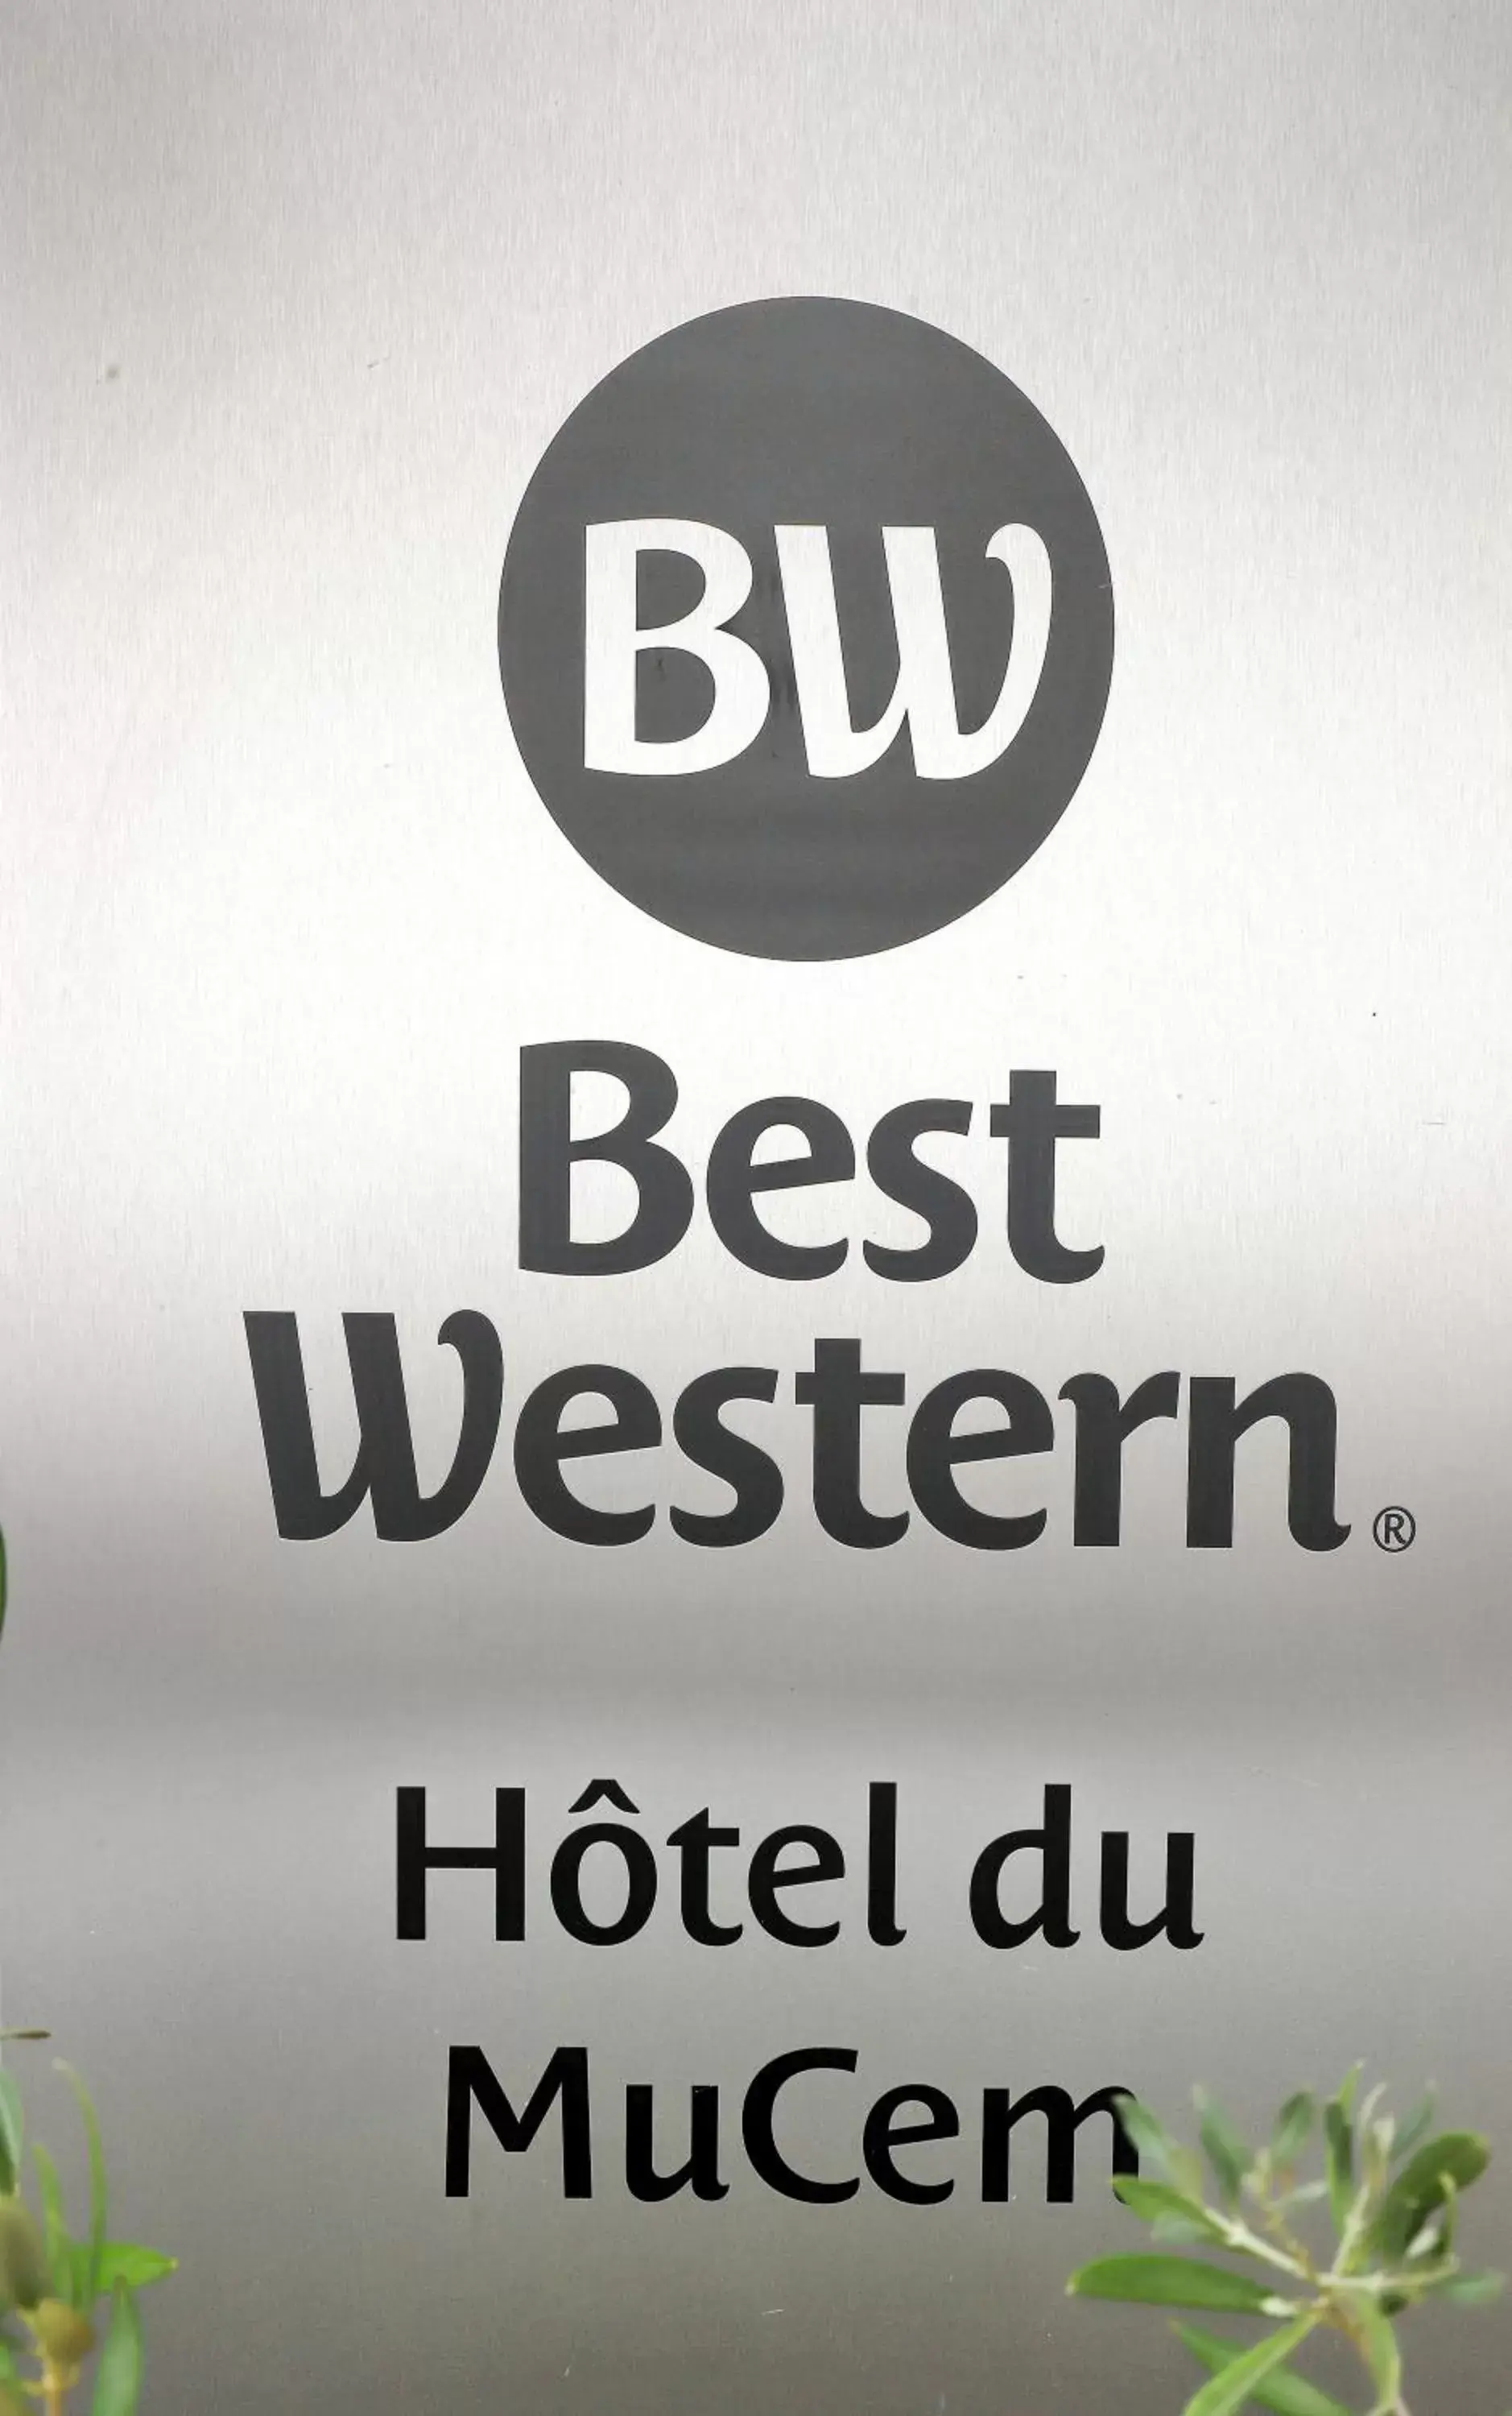 Property logo or sign in Best Western Hotel du Mucem